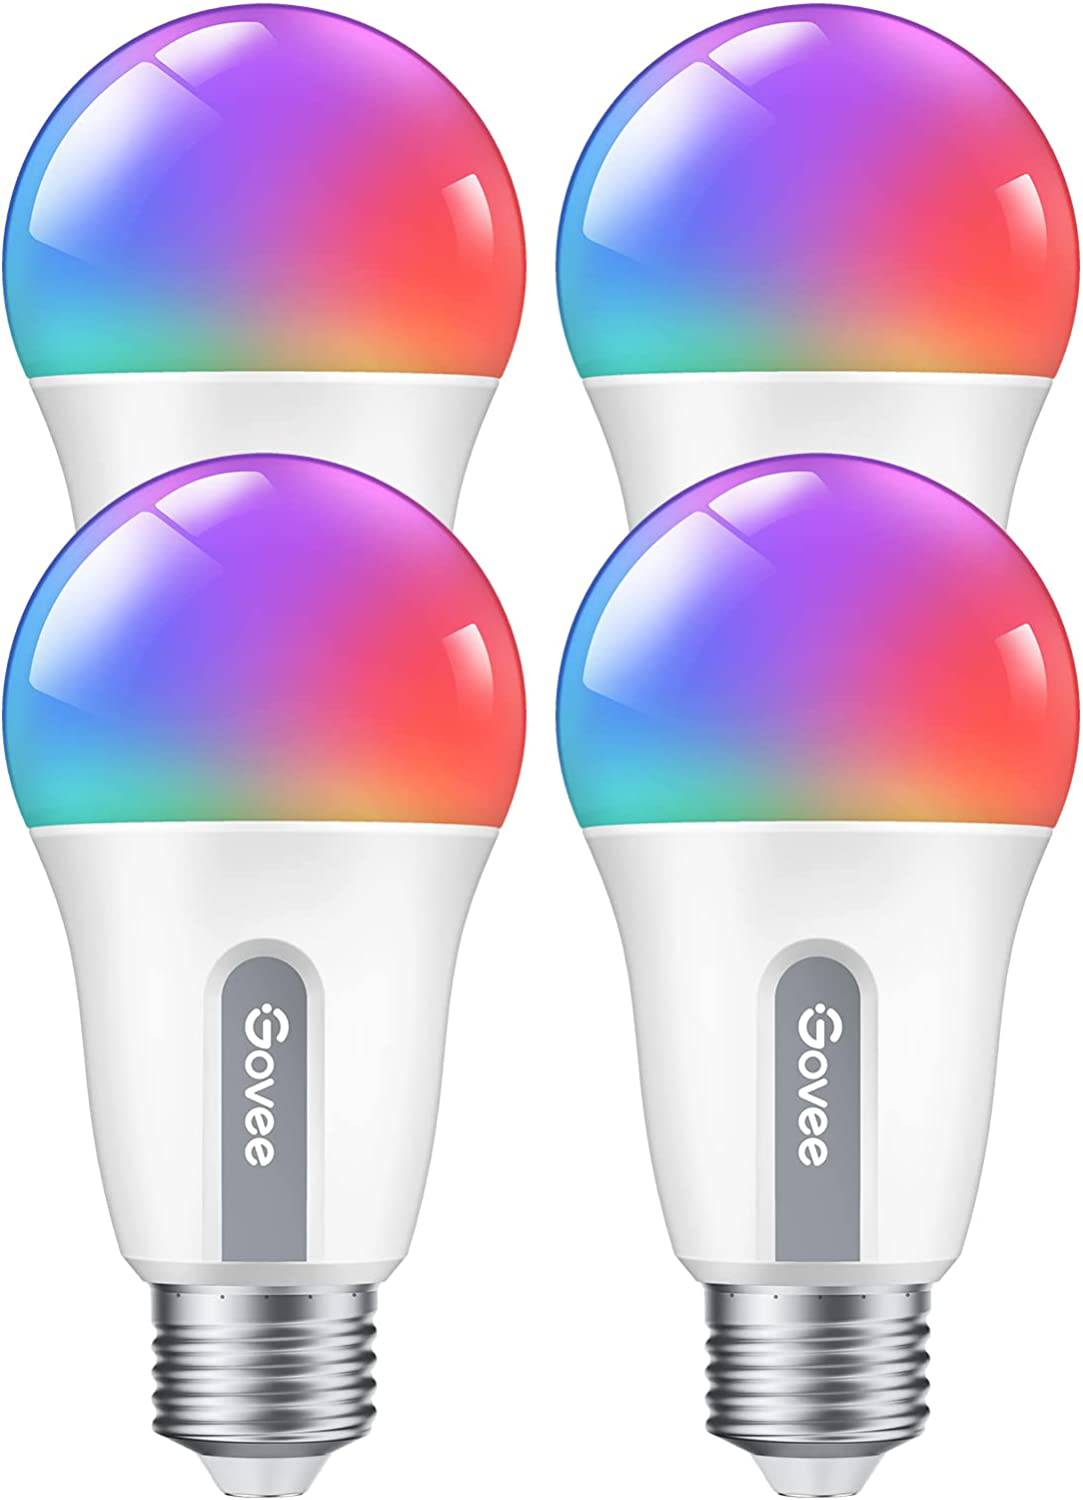 Govee - Bombillas inteligentes , cambian de color WiFi Bluetooth, sincronización de música, 54 escenas dinámicas, 16 millones de bombillas de luz RGB de colores DIY, funciona con Alexa, d Google y aplicación Govee Home, paquete de 4 - DIGVICE MX